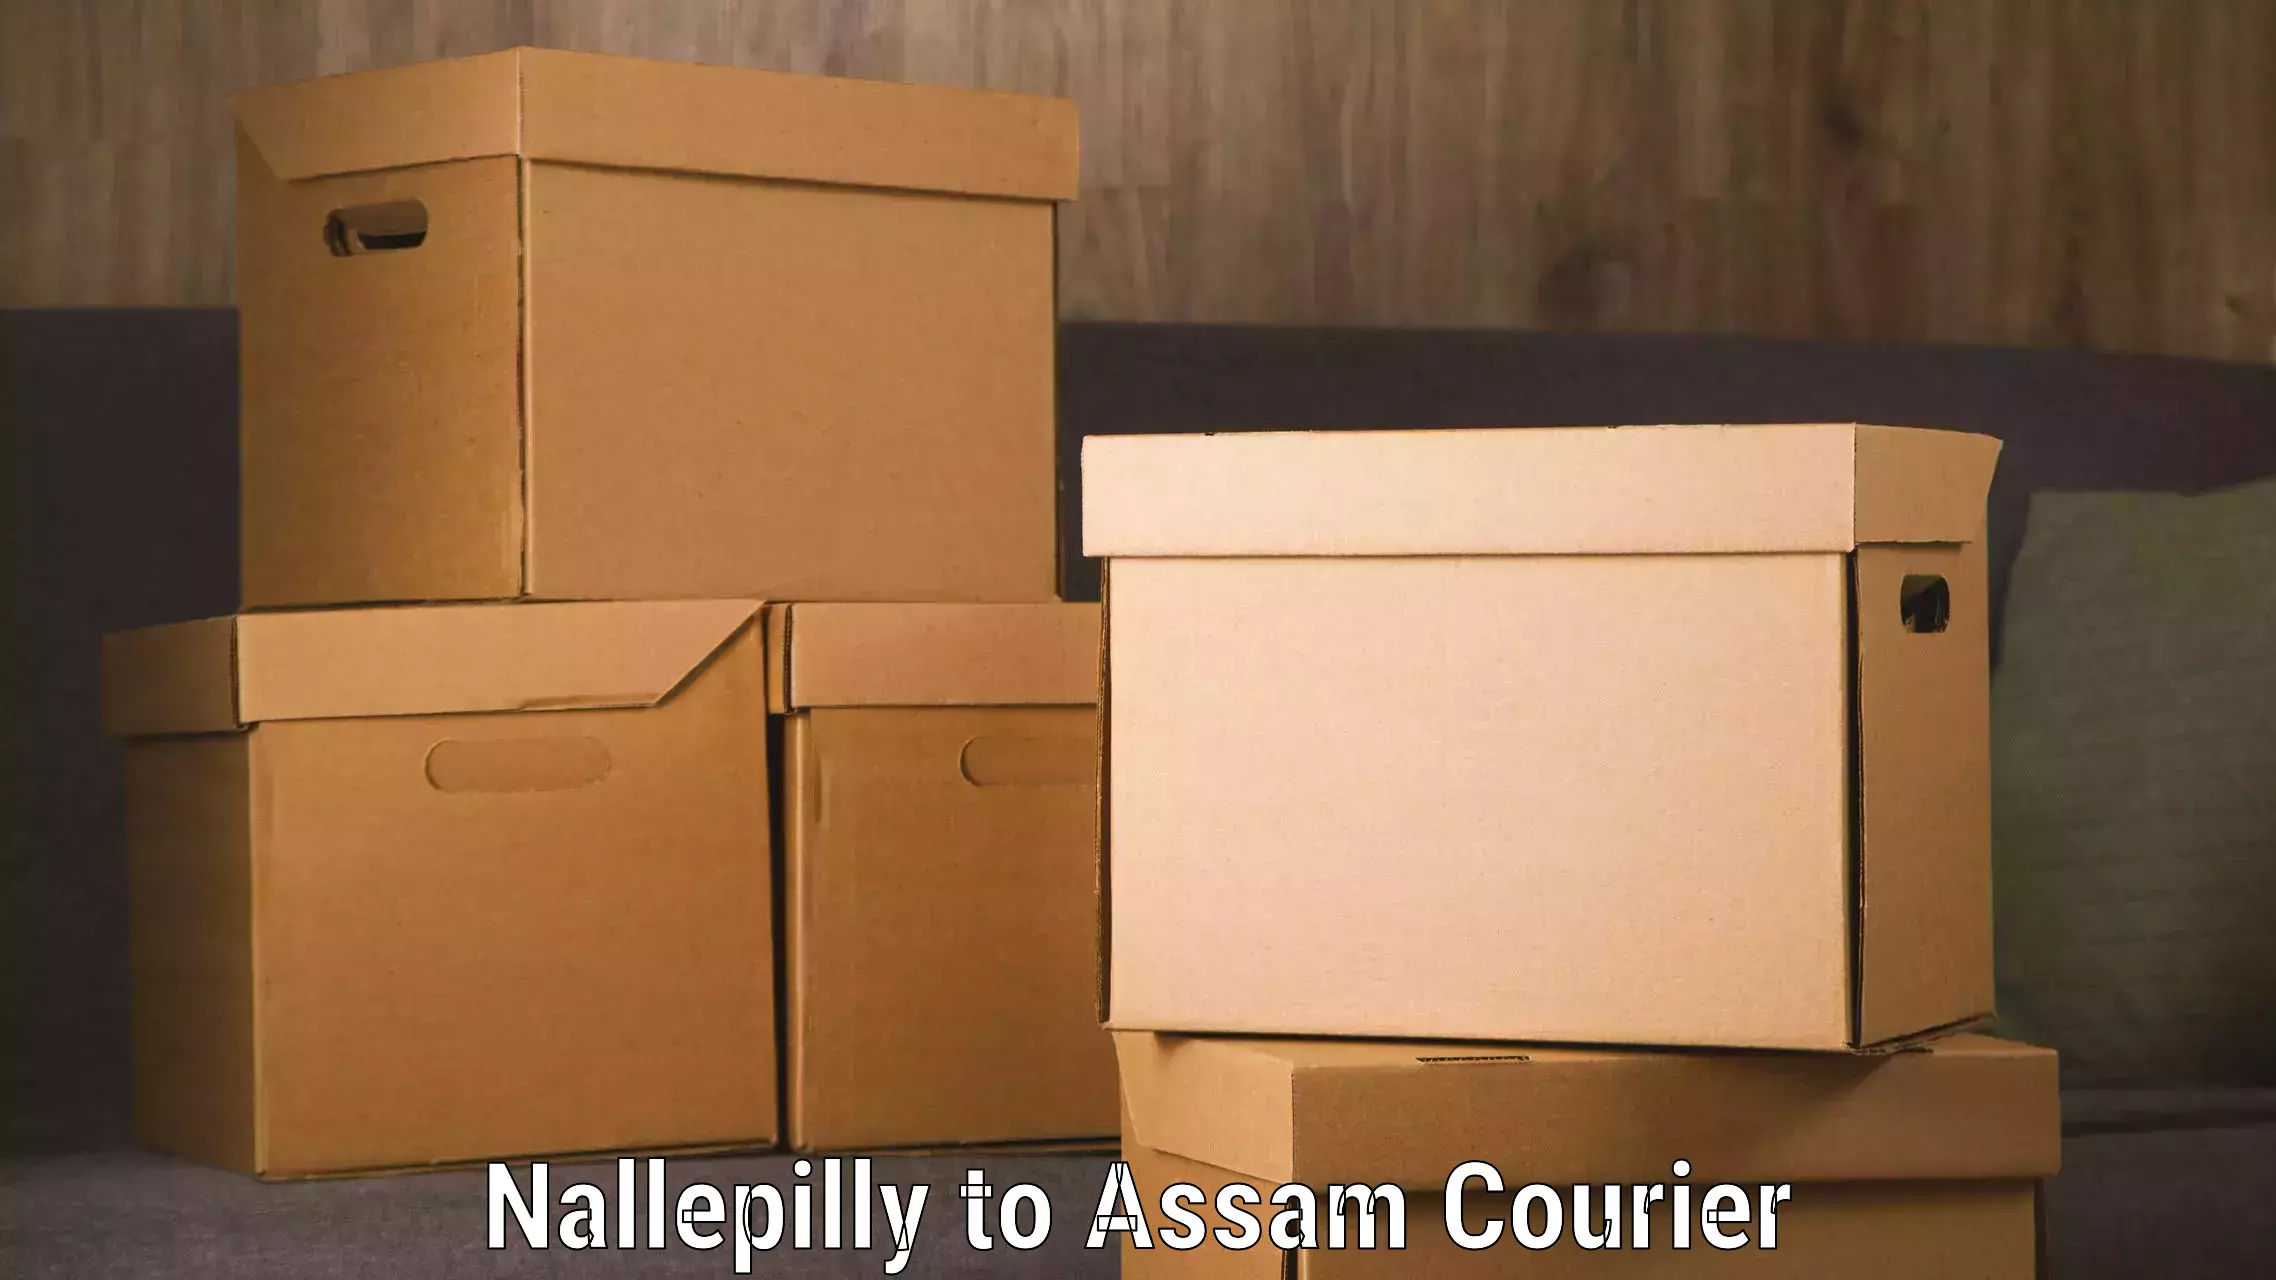 High-performance logistics Nallepilly to Lala Assam